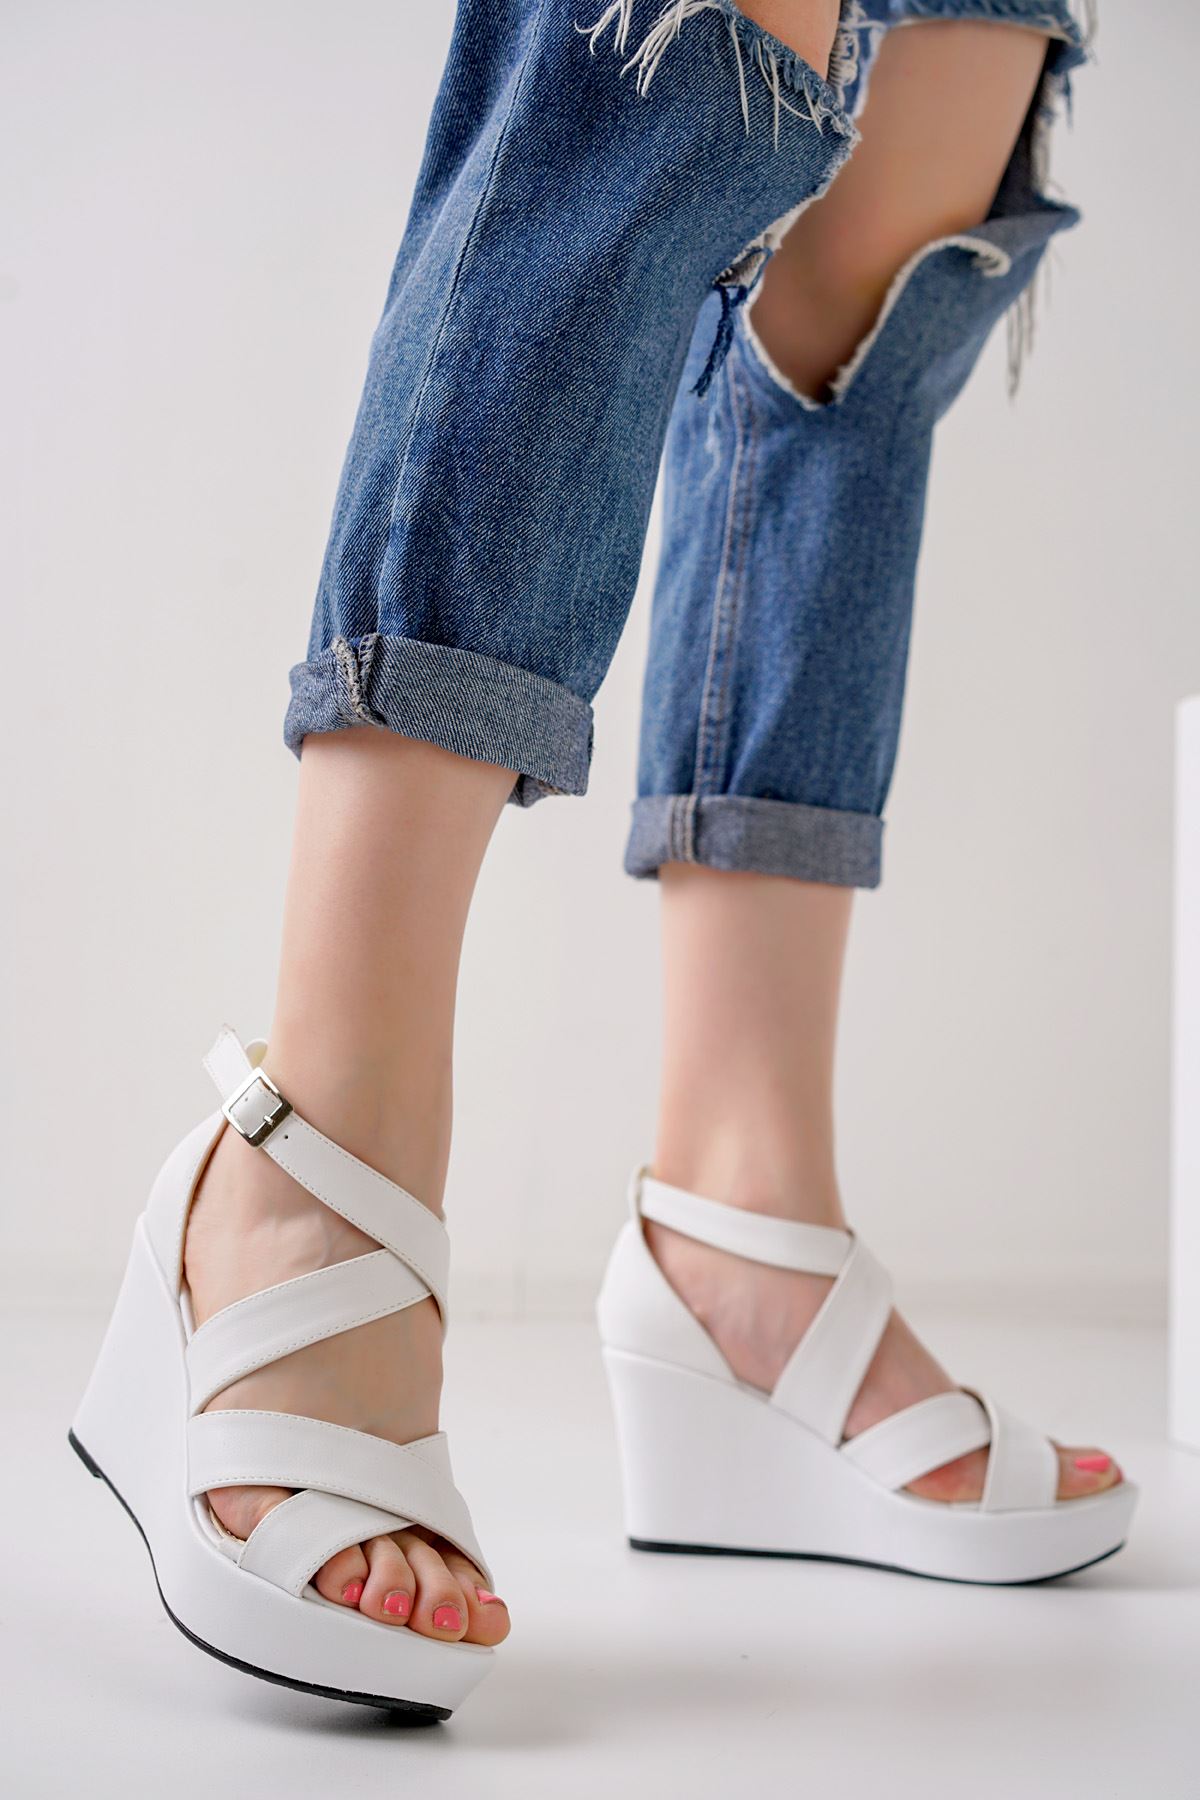 Flory Beyaz Dolgu Topuklu Kadın Ayakkabı